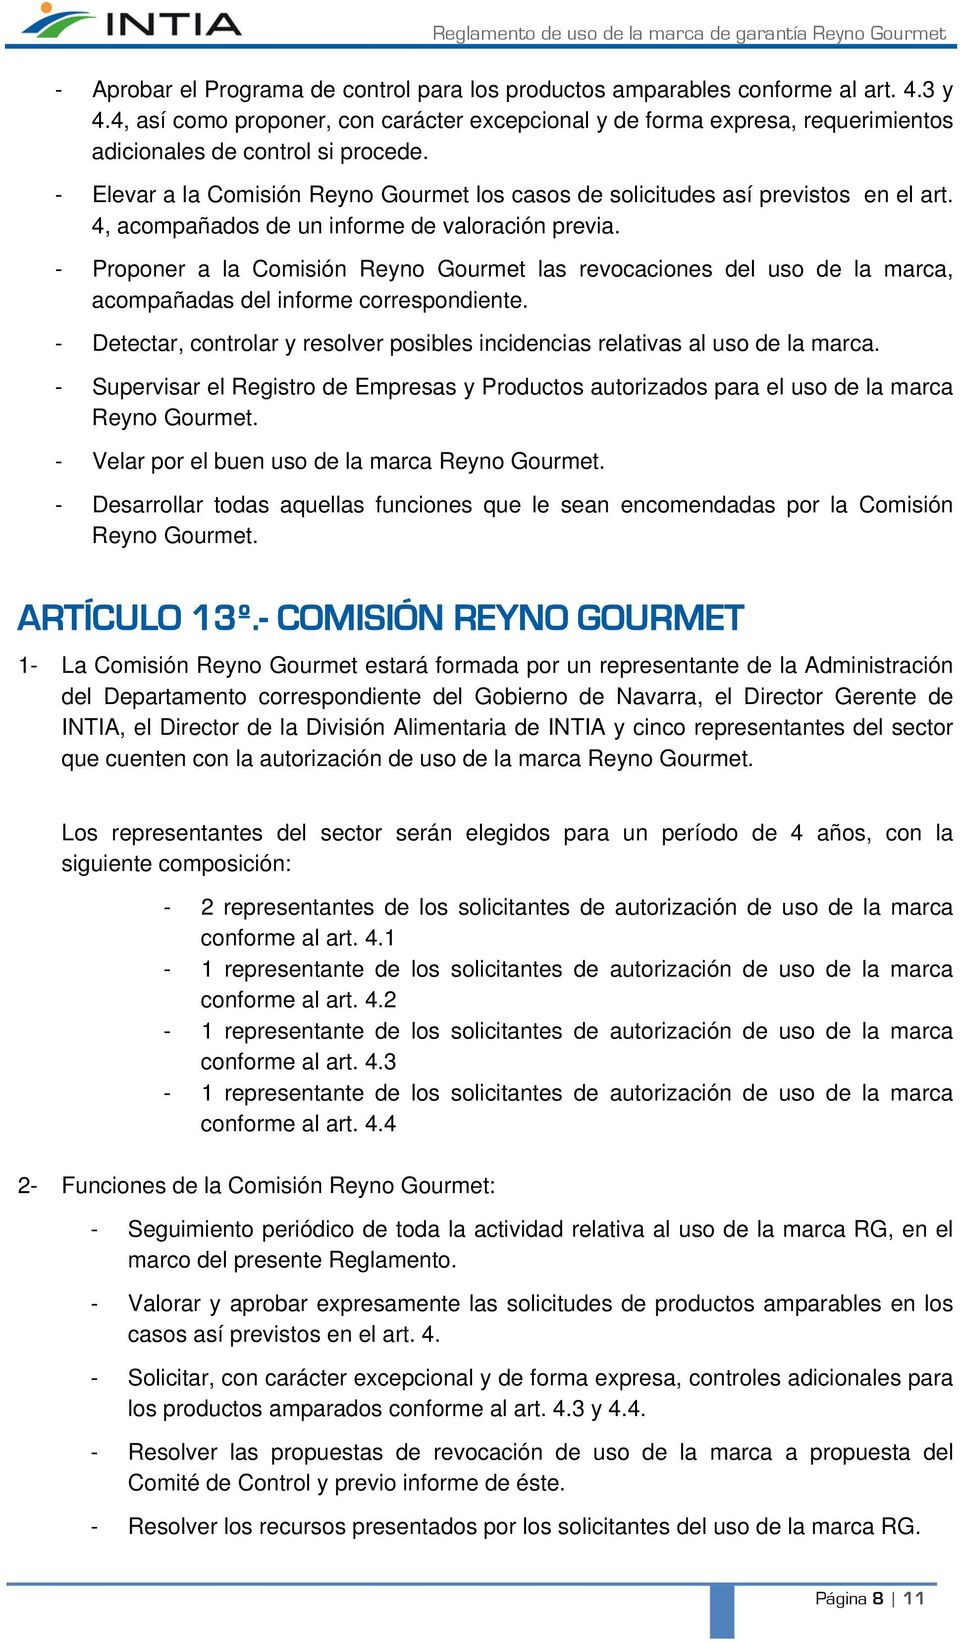 - Elevar a la Comisión Reyno Gourmet los casos de solicitudes así previstos en el art. 4, acompañados de un informe de valoración previa.